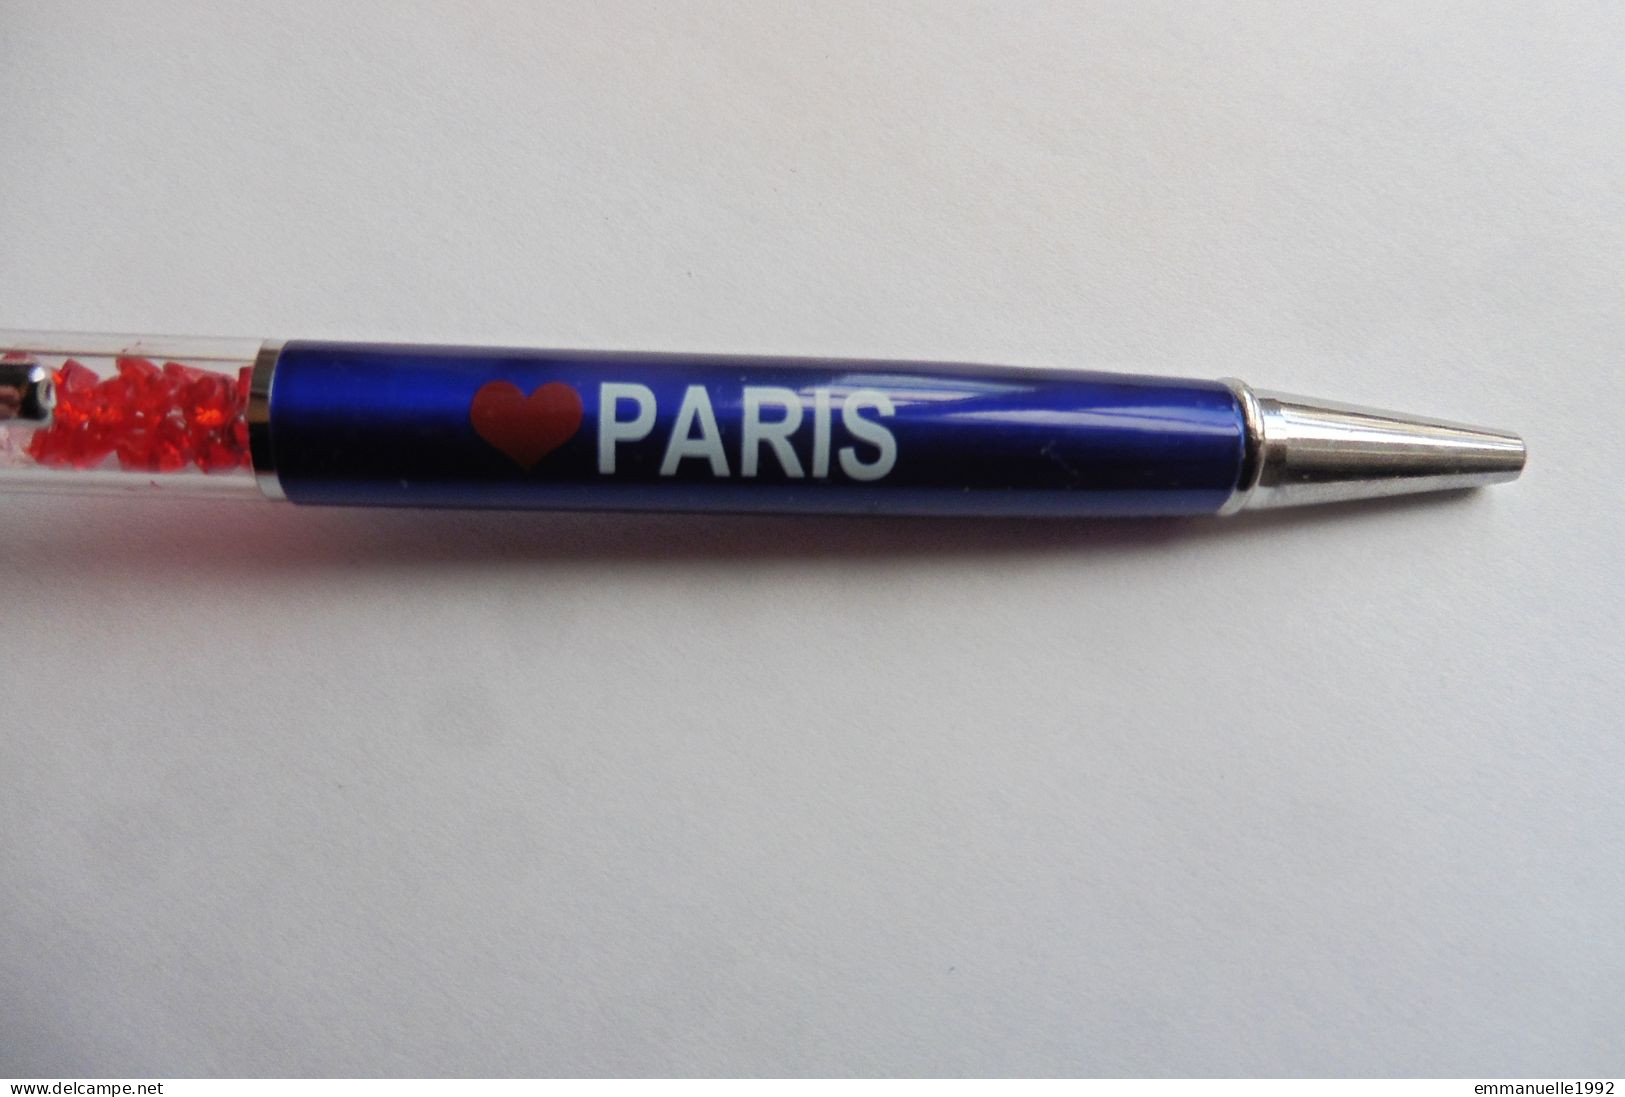 Stylo Mobile Souvenir Floaty Pen - I Love Paris France Drapeau Breloque Tour Eiffel Lucky Charm - Schreibgerät